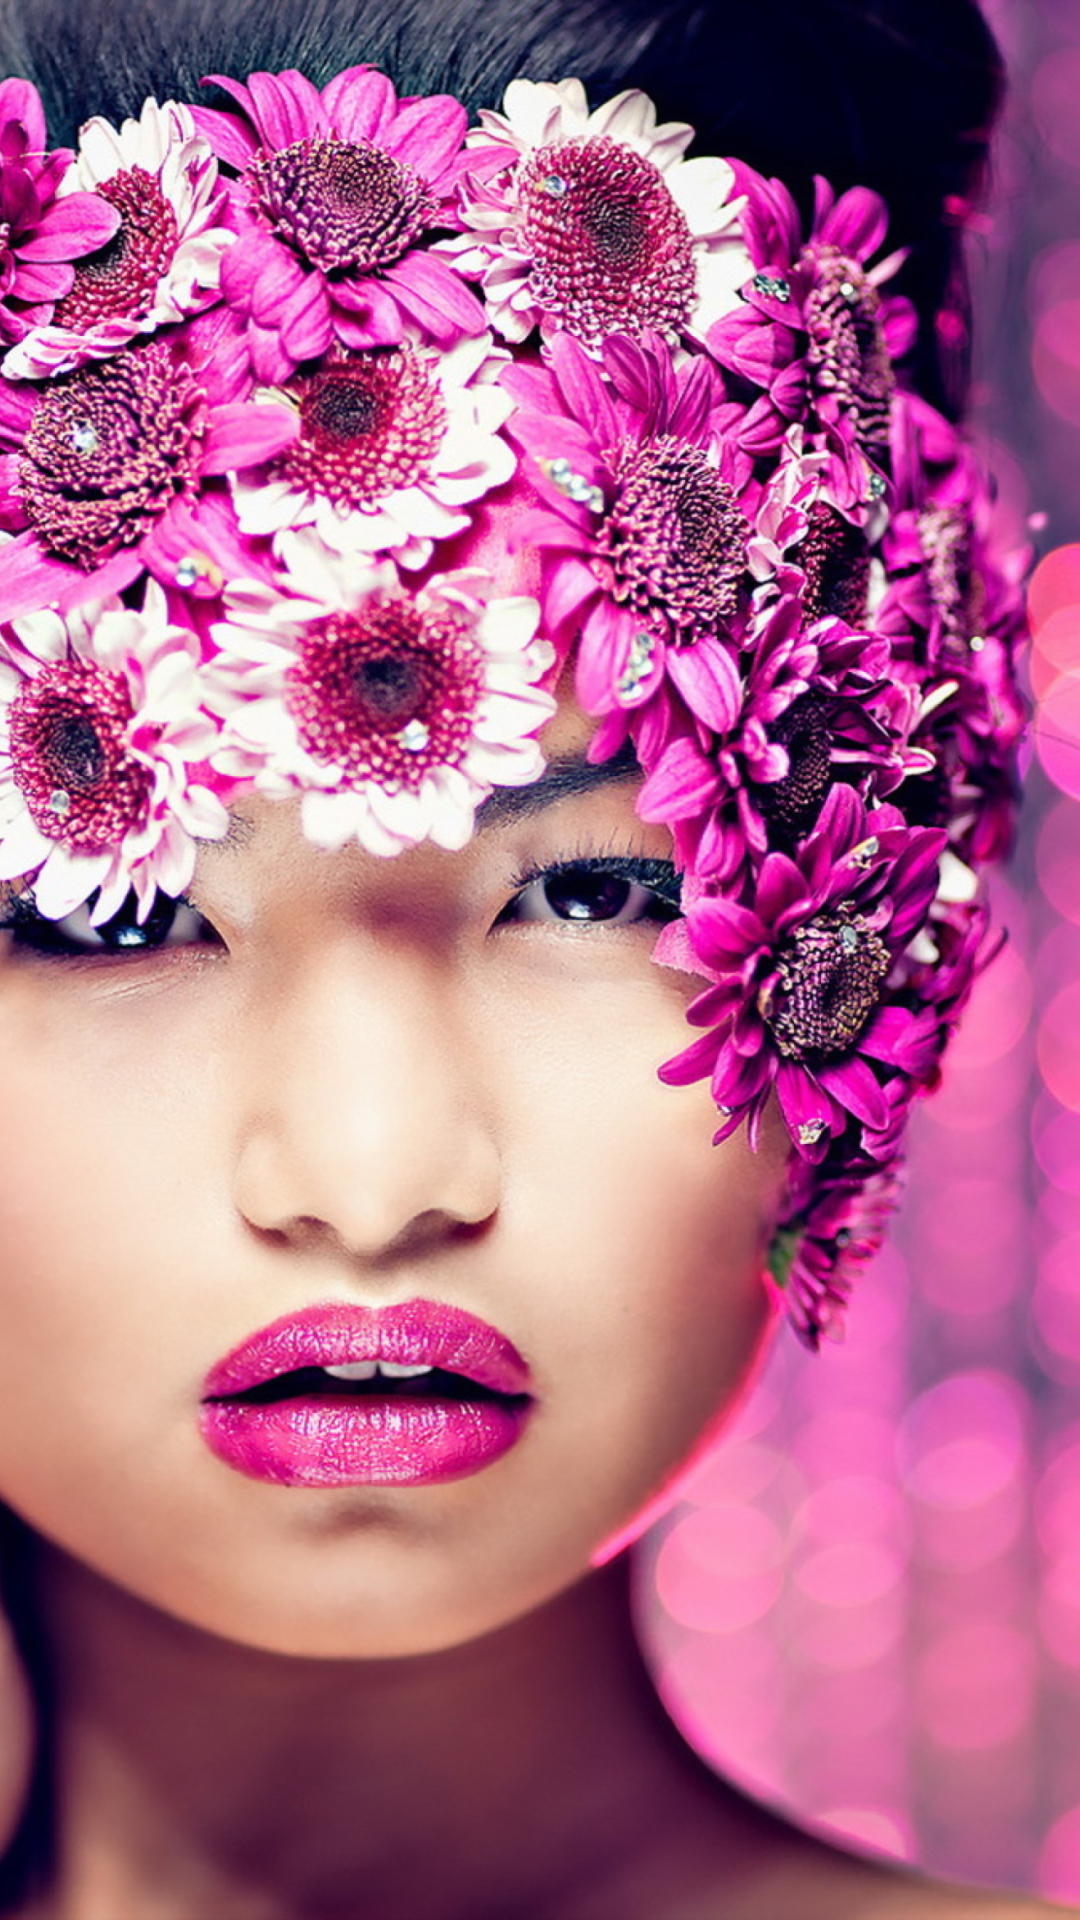 Обои Asian Fashion Model With Pink Flower Wreath 1080x1920